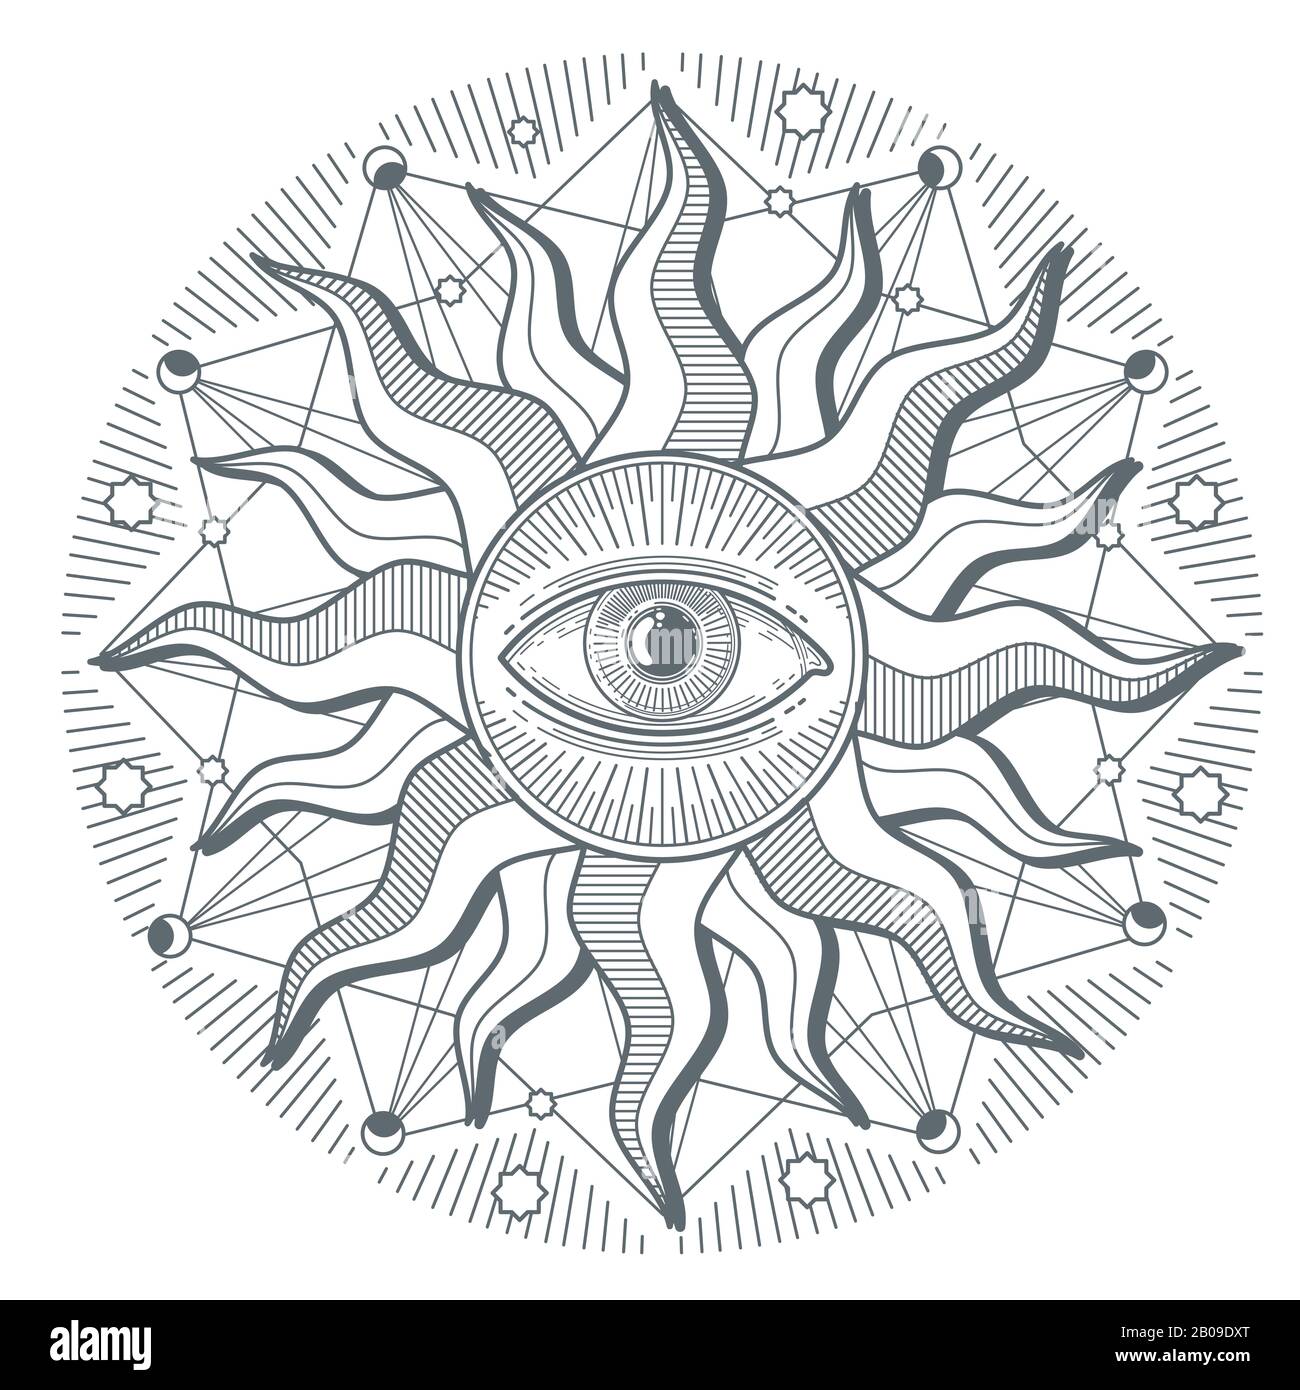 Tous les yeux illuminati nouvel ordre mondial vecteur freemasonry signe. Illustration du symbole de la franc-maçonnerie illuminati Illustration de Vecteur